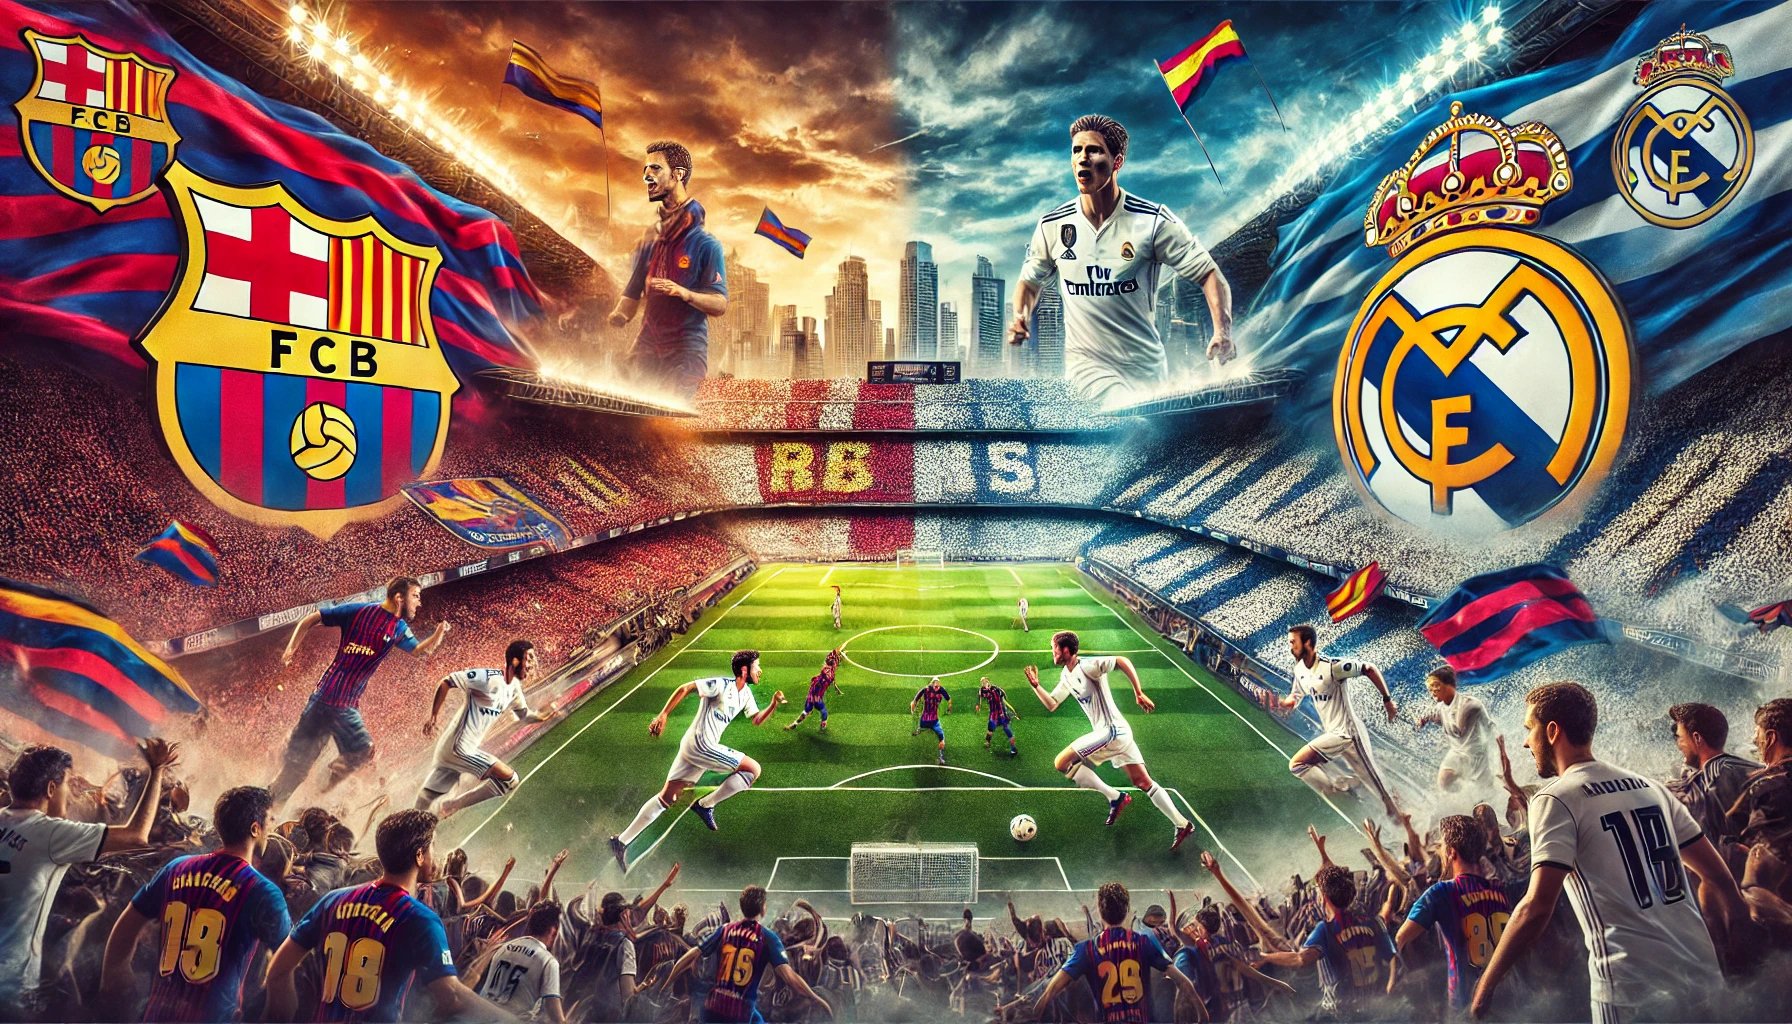 Barcelona vs Real Madrid rivalry